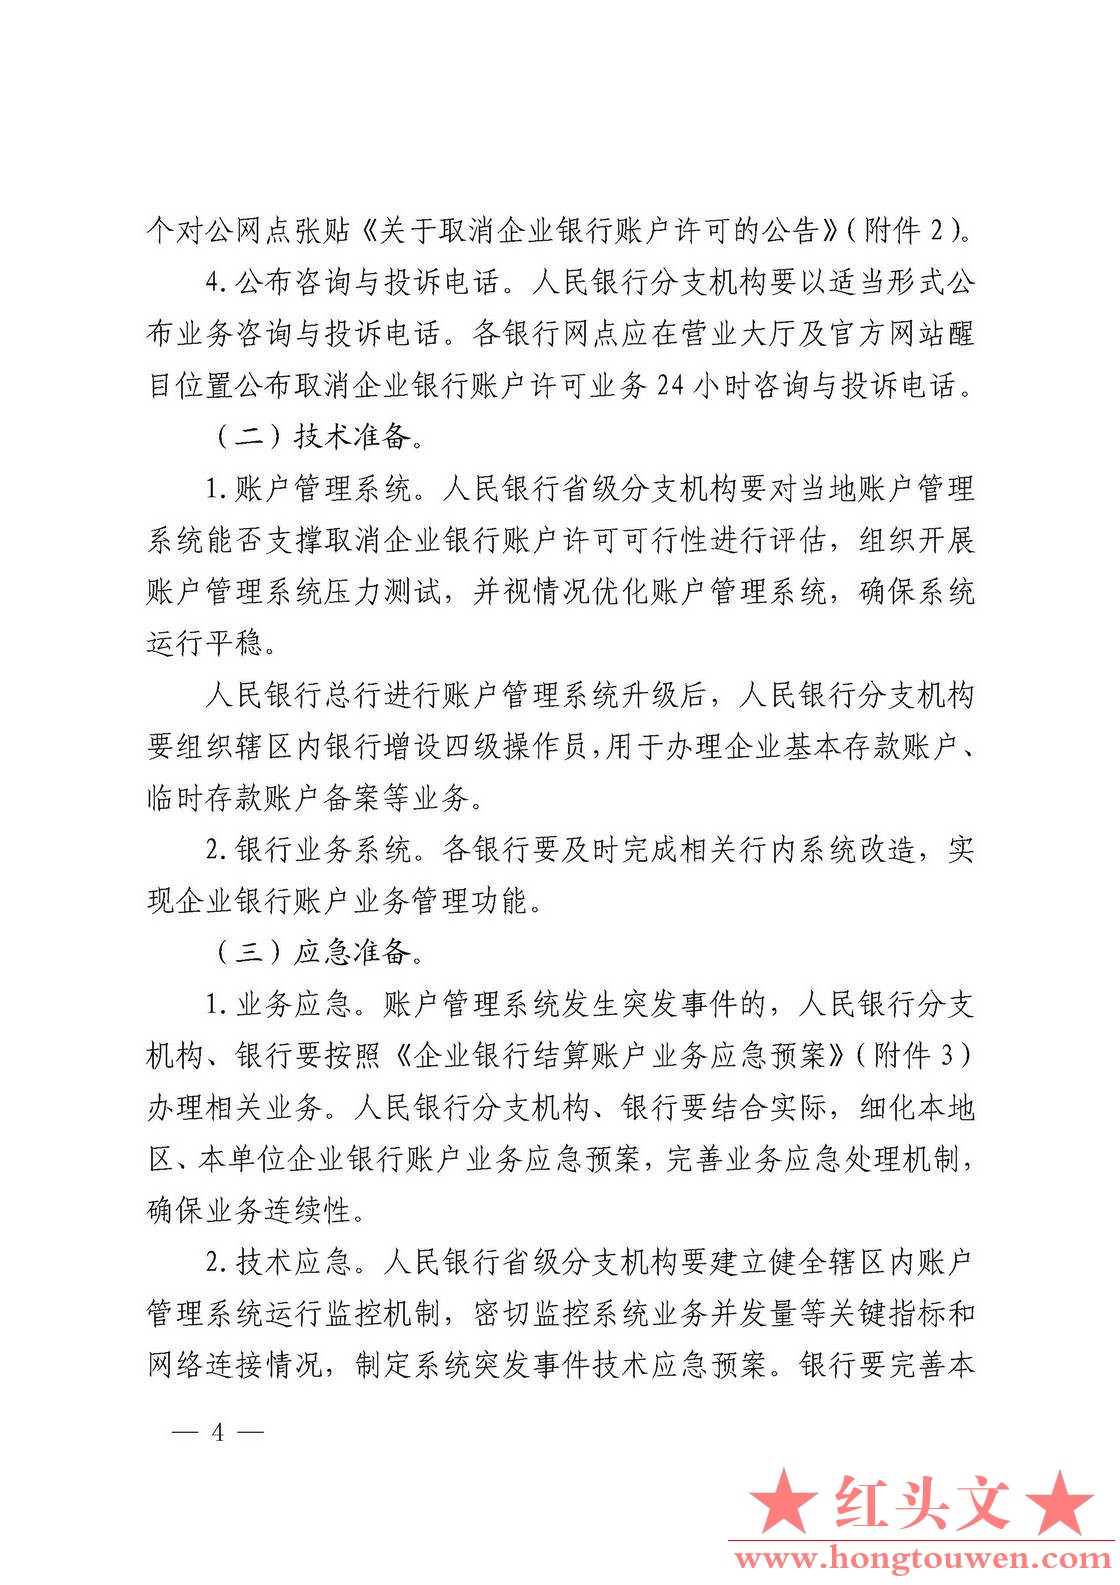 银发[2019]41号-中国人民银行关于取消企业银行账户许可的通知_页面_04.jpg.jpg